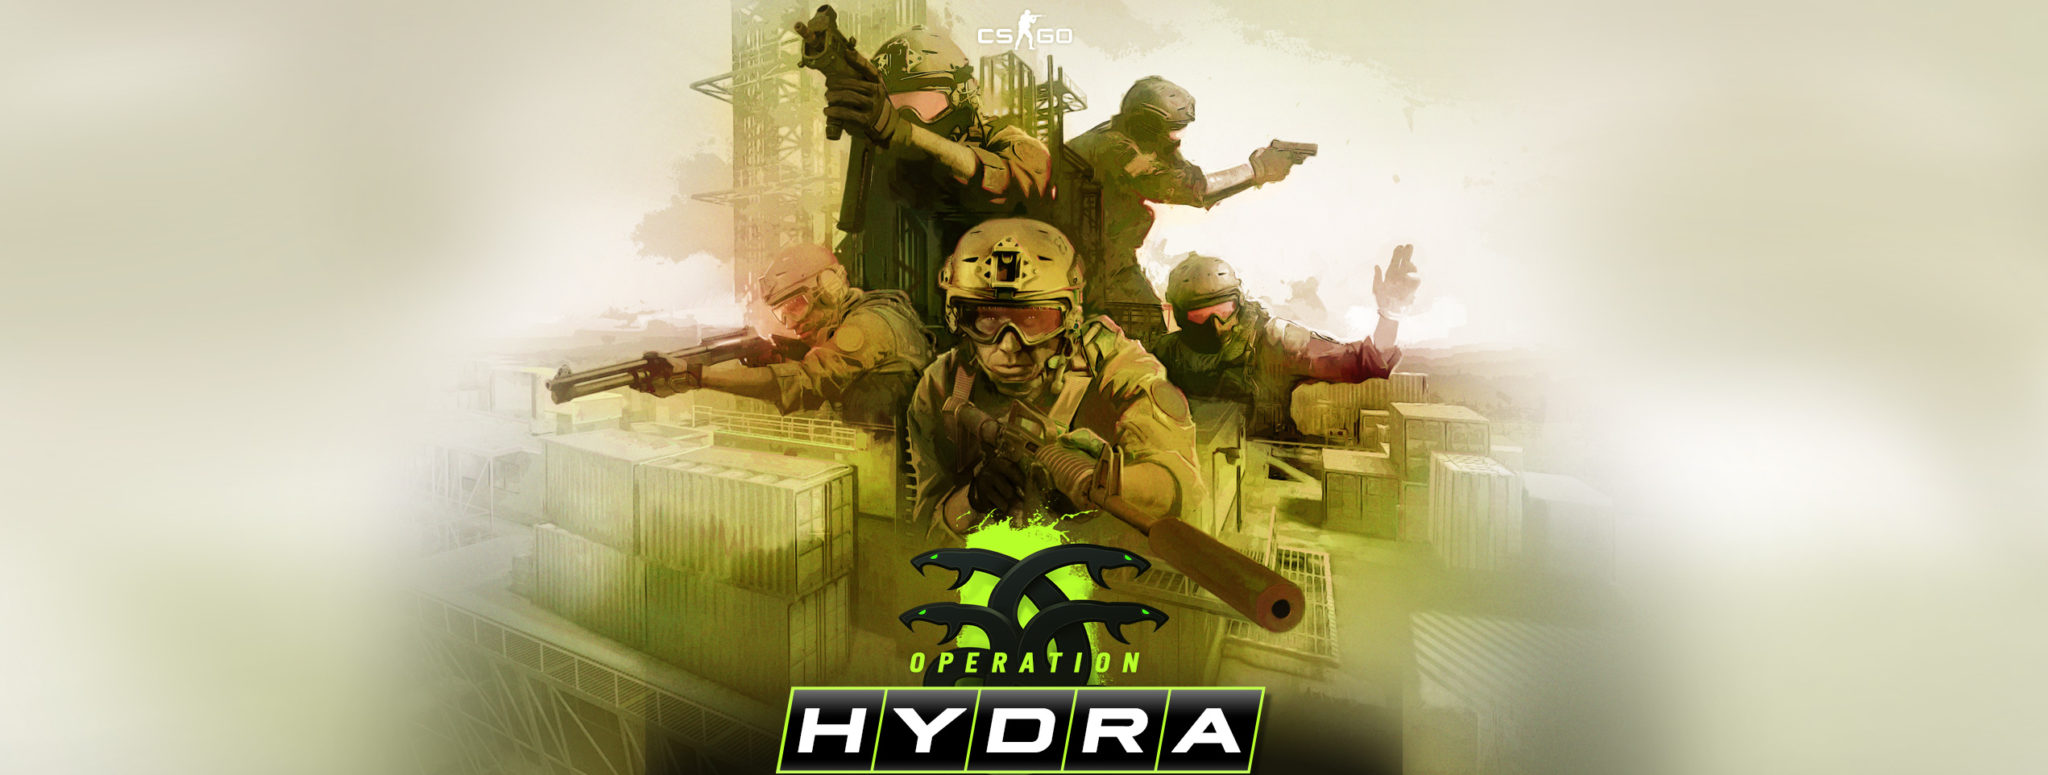 Hydra union ссылка